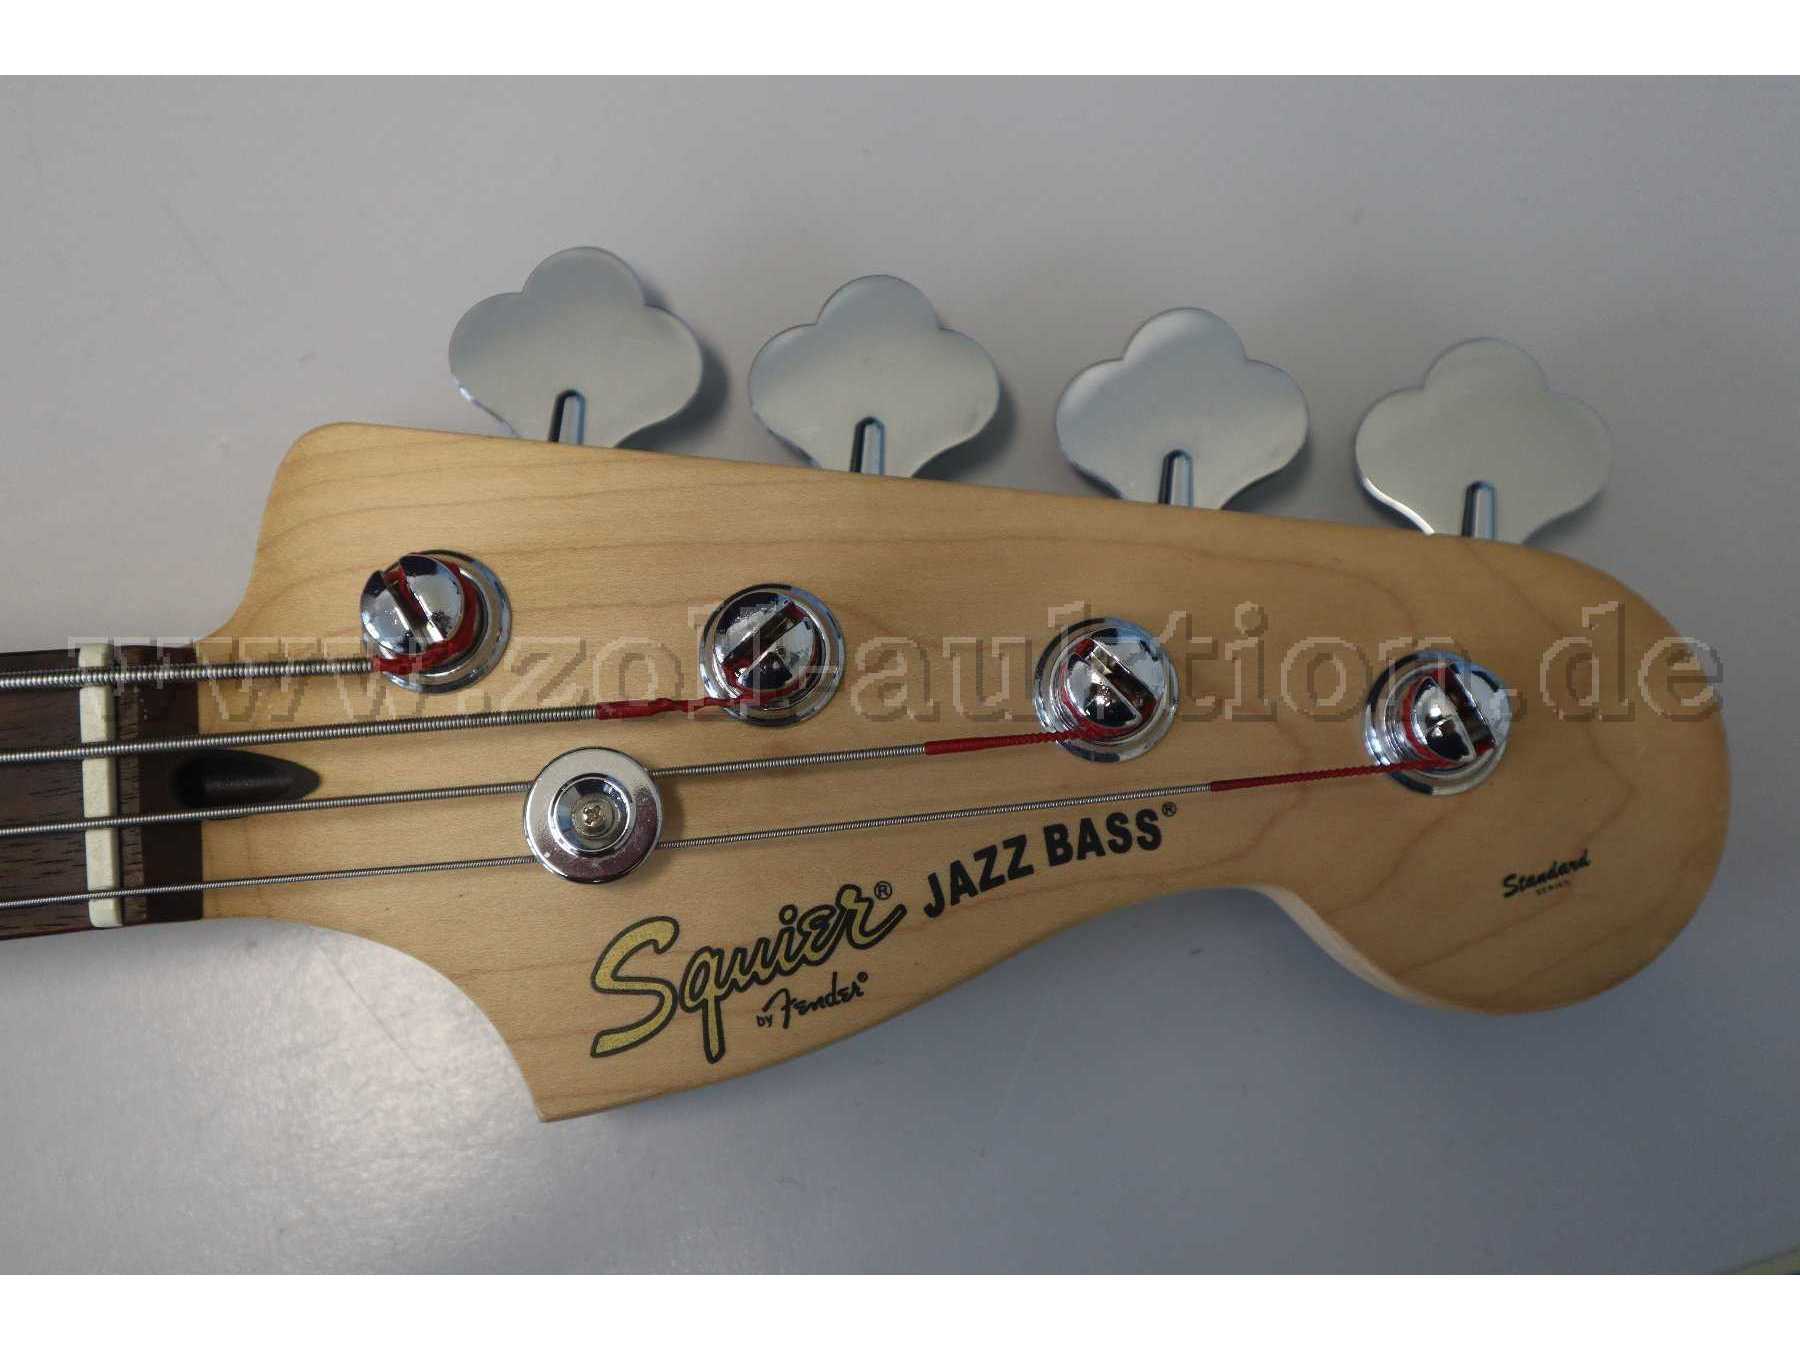 Standard Jazz Bass by Fender Gesamtansicht Detailansicht